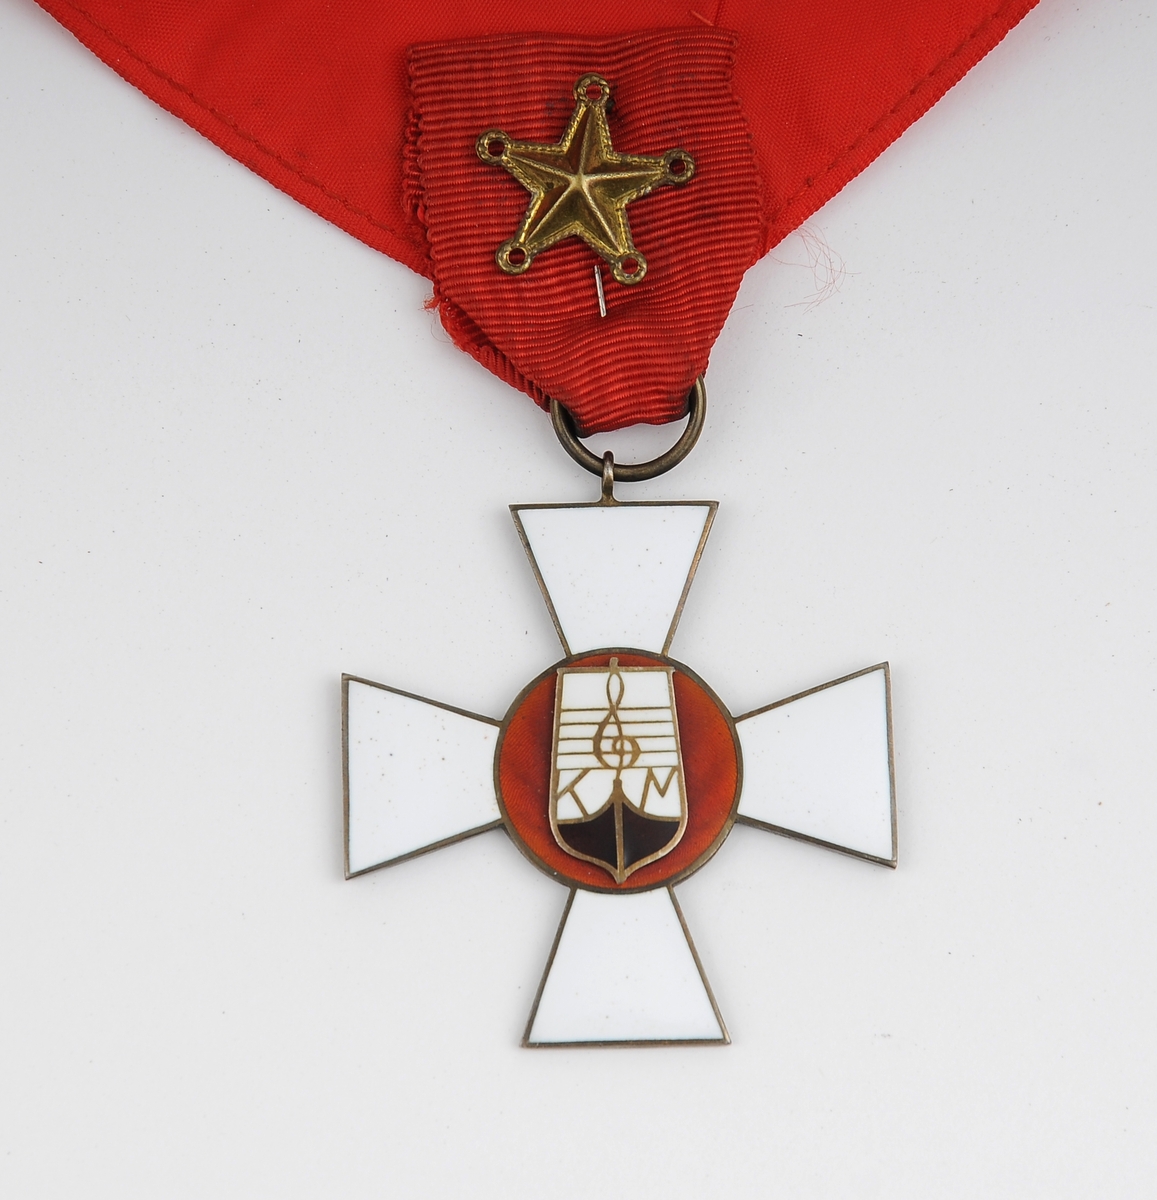 Korsformet medalje som henger i rødt bånd til å ha rundt halsen. Båndet til å ha rundt halsen ser hjemmelaget ut. Nål med femtagget stjerne festet i overgangen fra medaljen til båndet rundt halsen. 